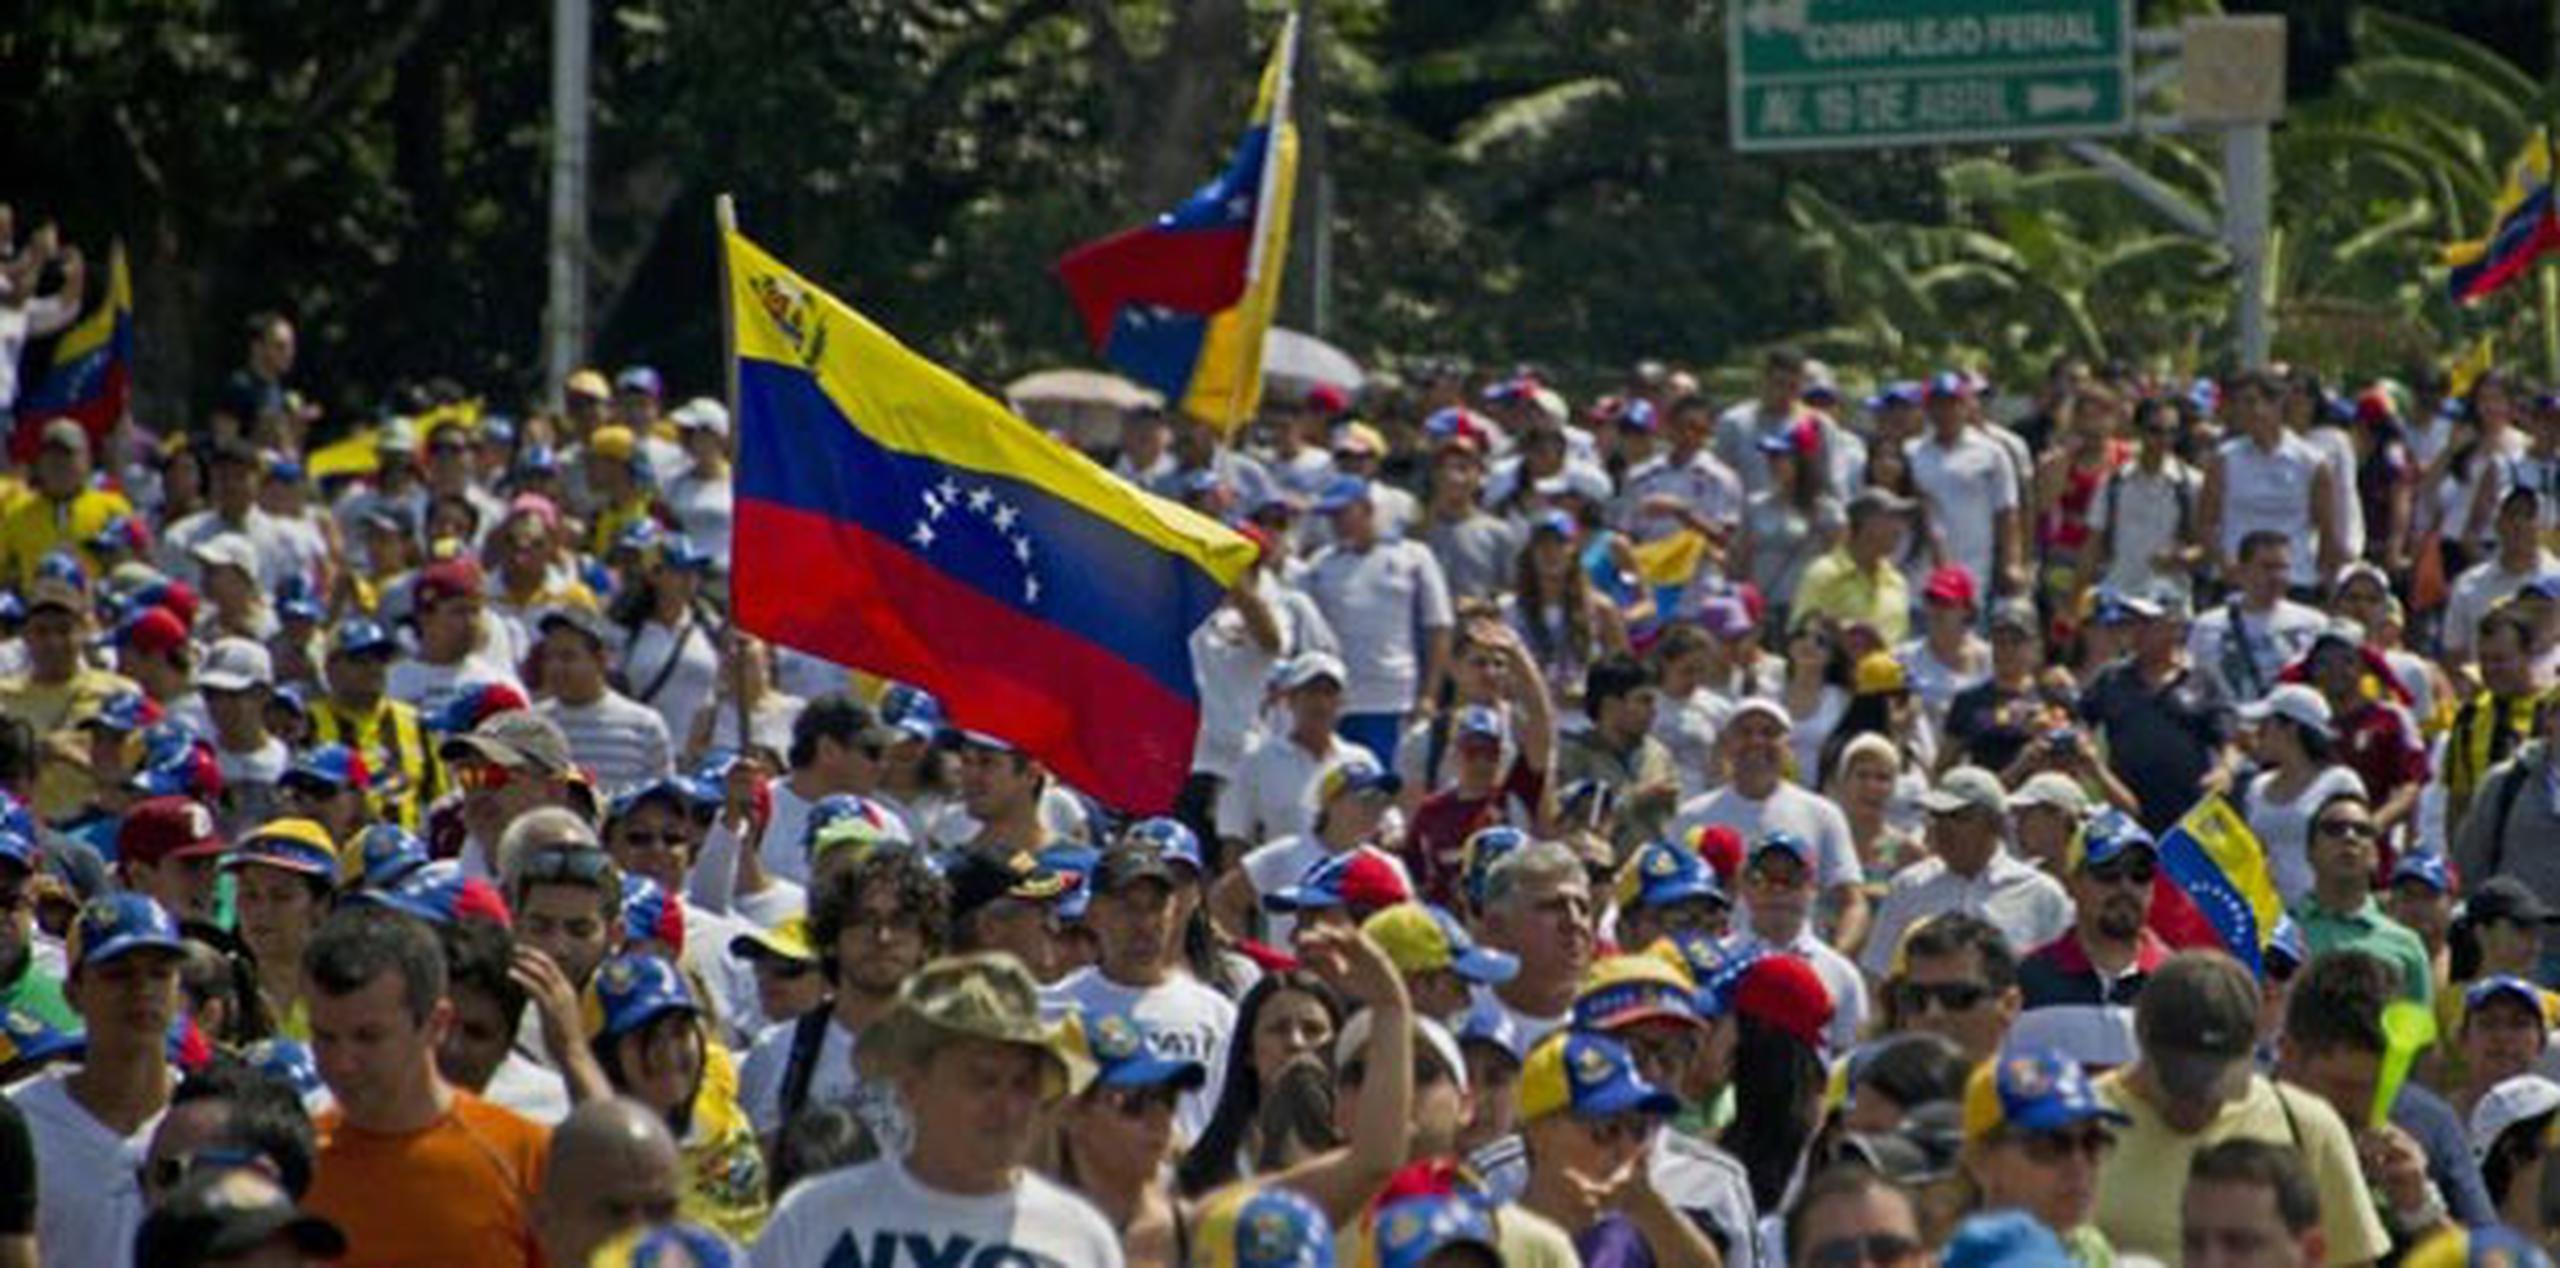 El líder opositor y excandidato presidencial venezolano Henrique Capriles dijo hoy que "las protestas seguirán" hasta que el Gobierno atienda las demandas de los manifestantes. (Archivo)
